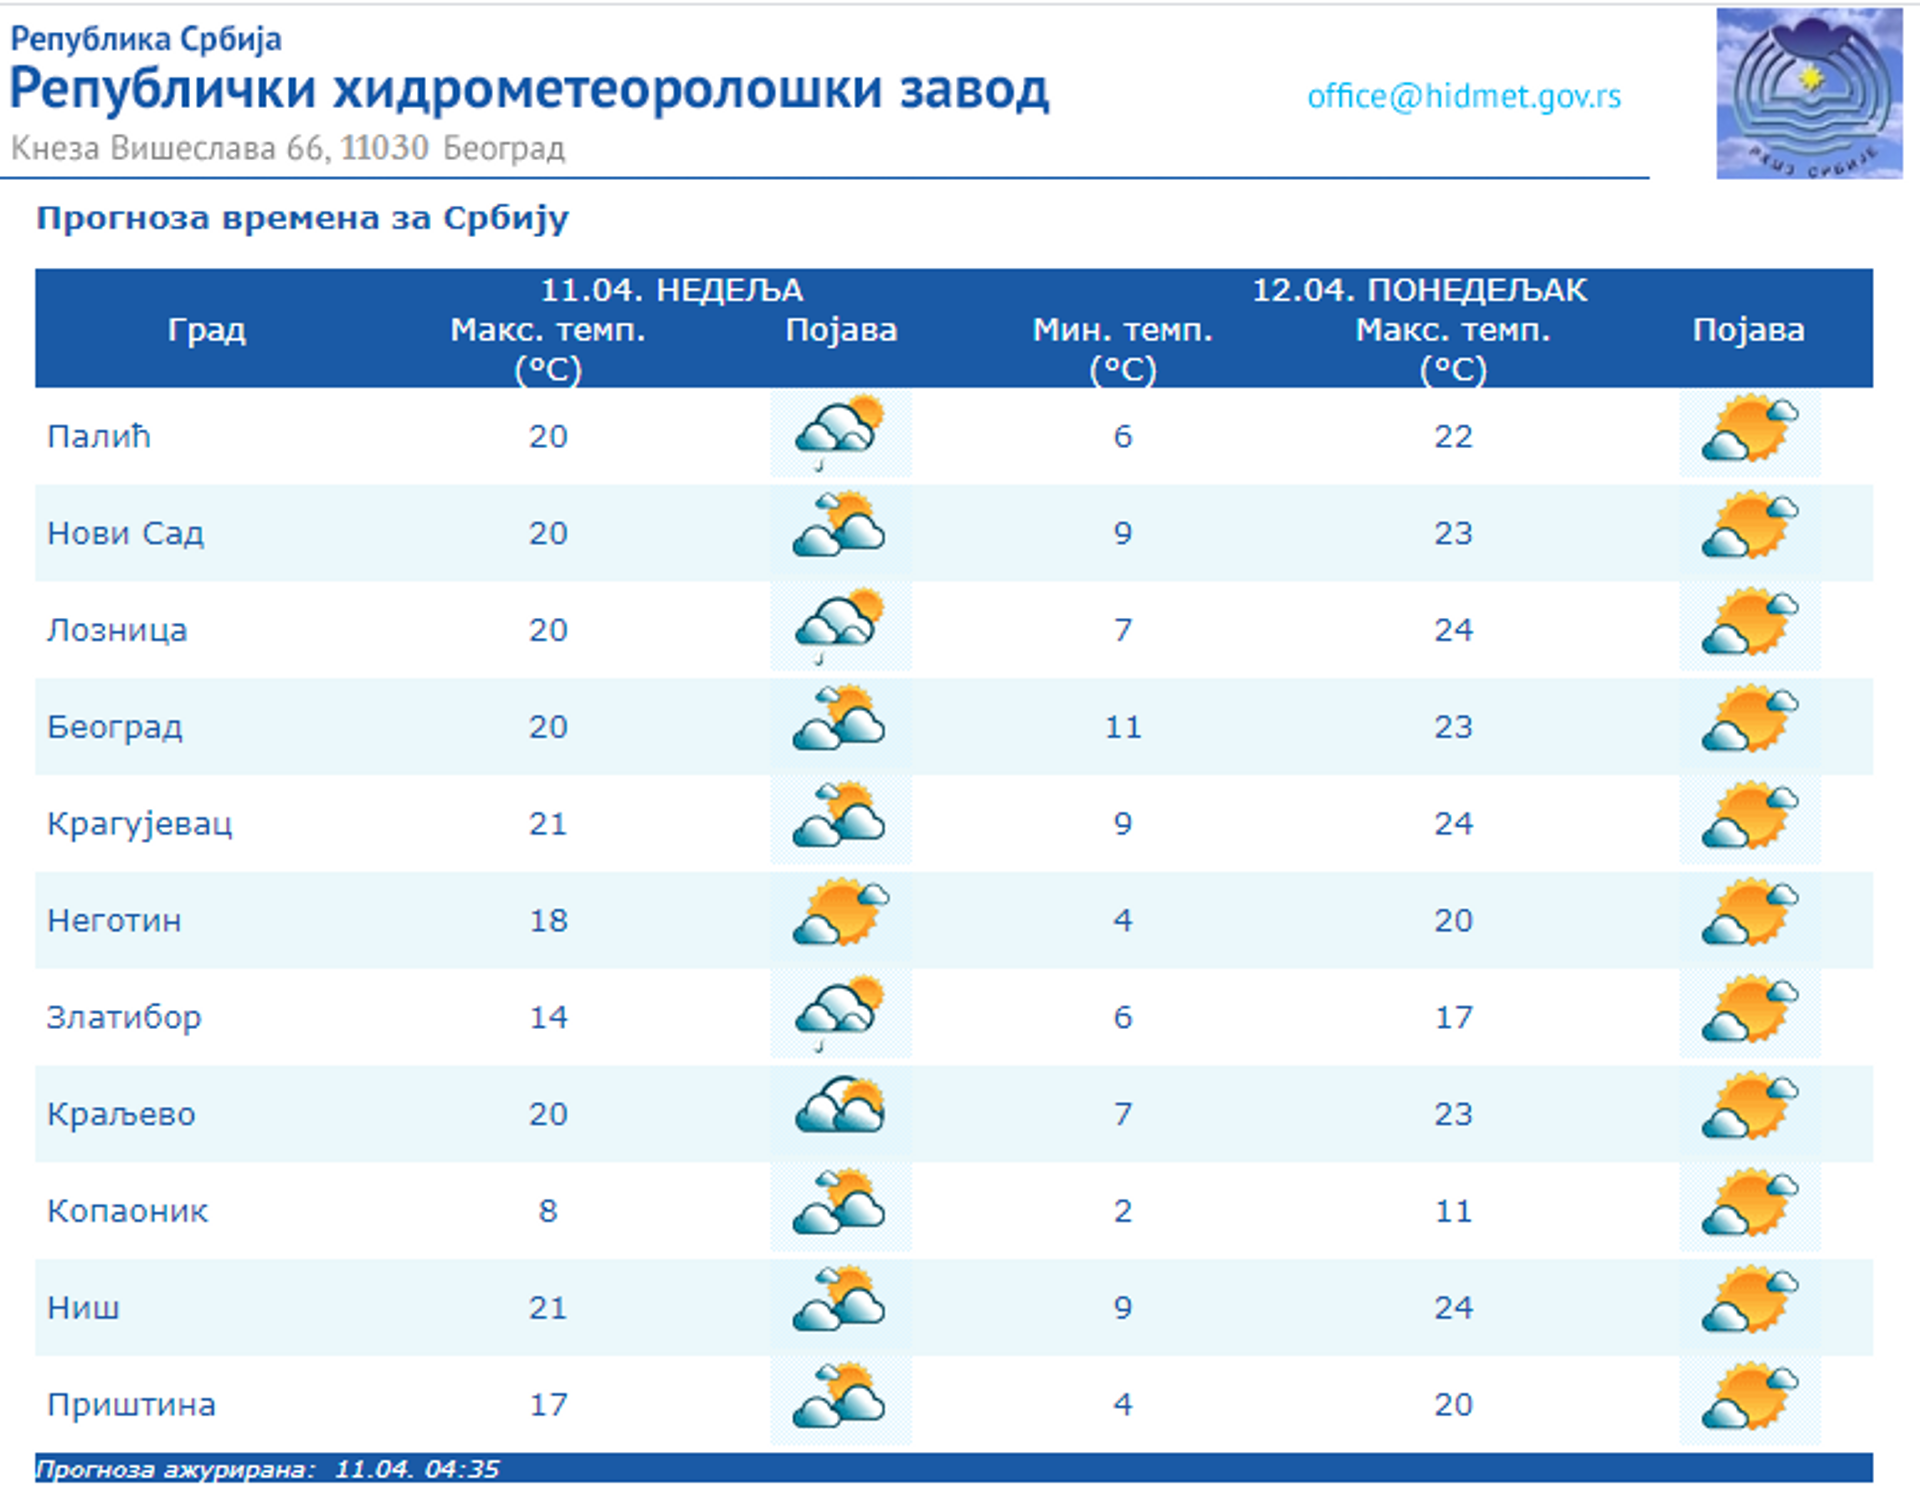 Vreme danas: Sunčano, popodne moguća kiša, sutra toplo - Sputnik Srbija, 1920, 11.04.2021